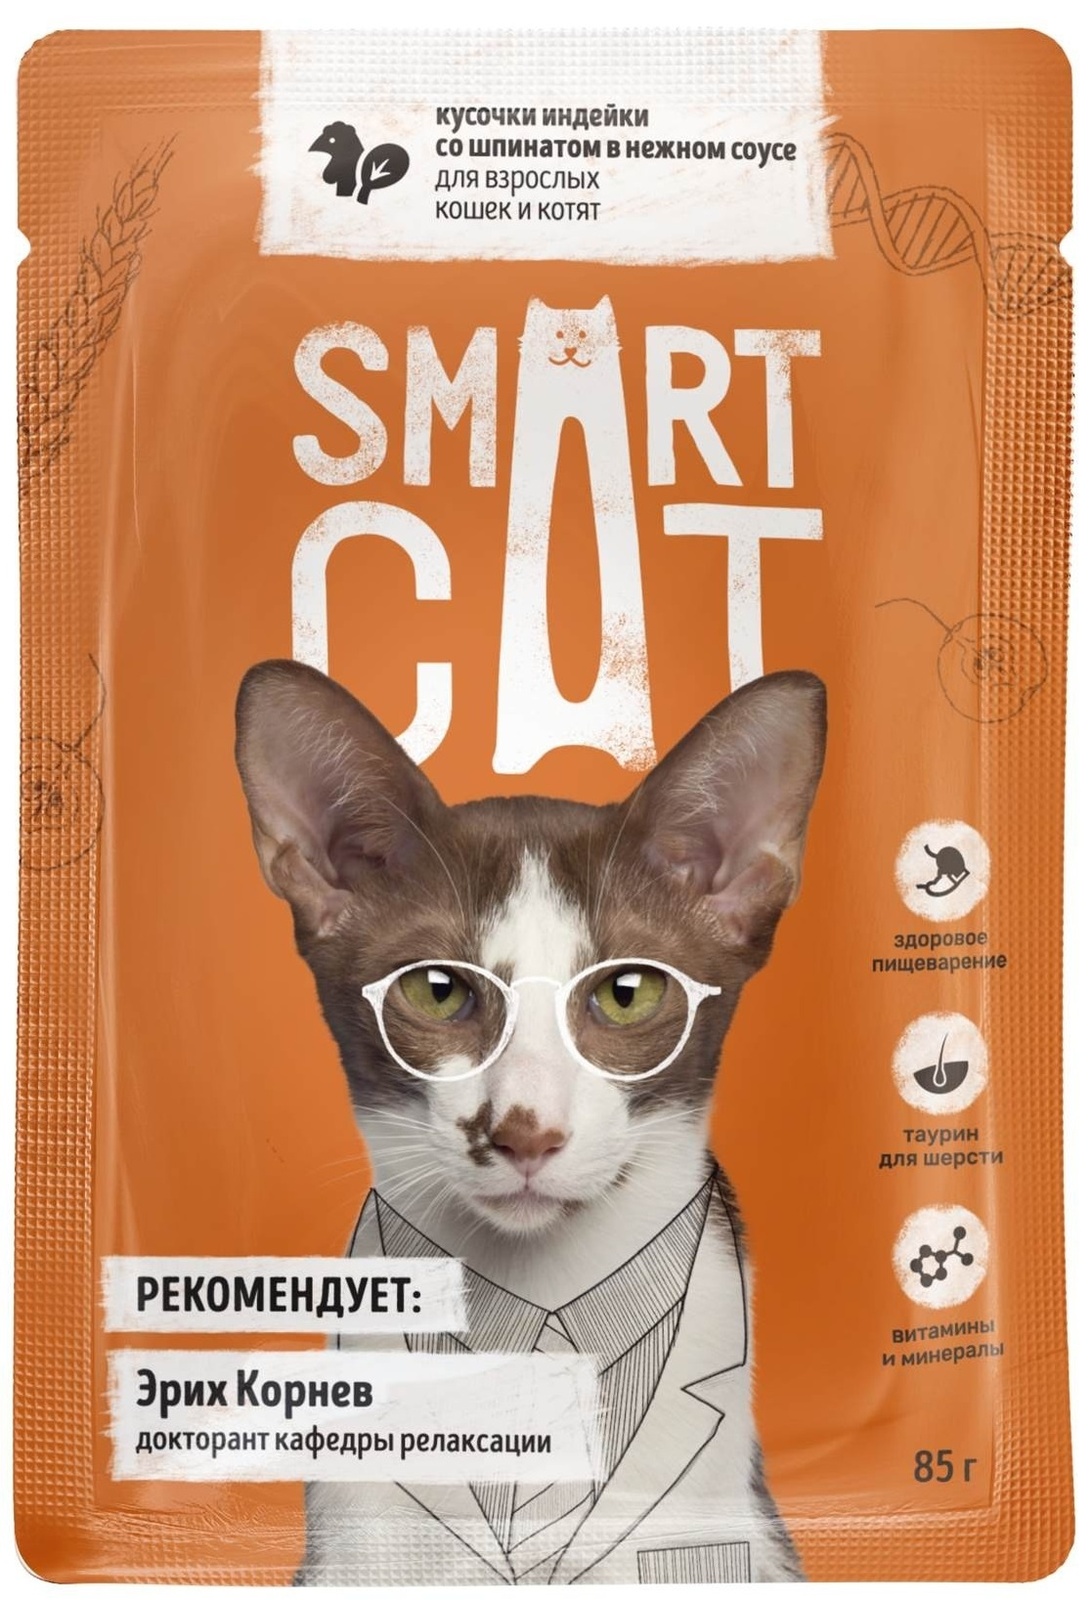 Smart Cat Smart Cat паучи для взрослых кошек и котят: кусочки индейки со шпинатом в нежном соусе (85 г)